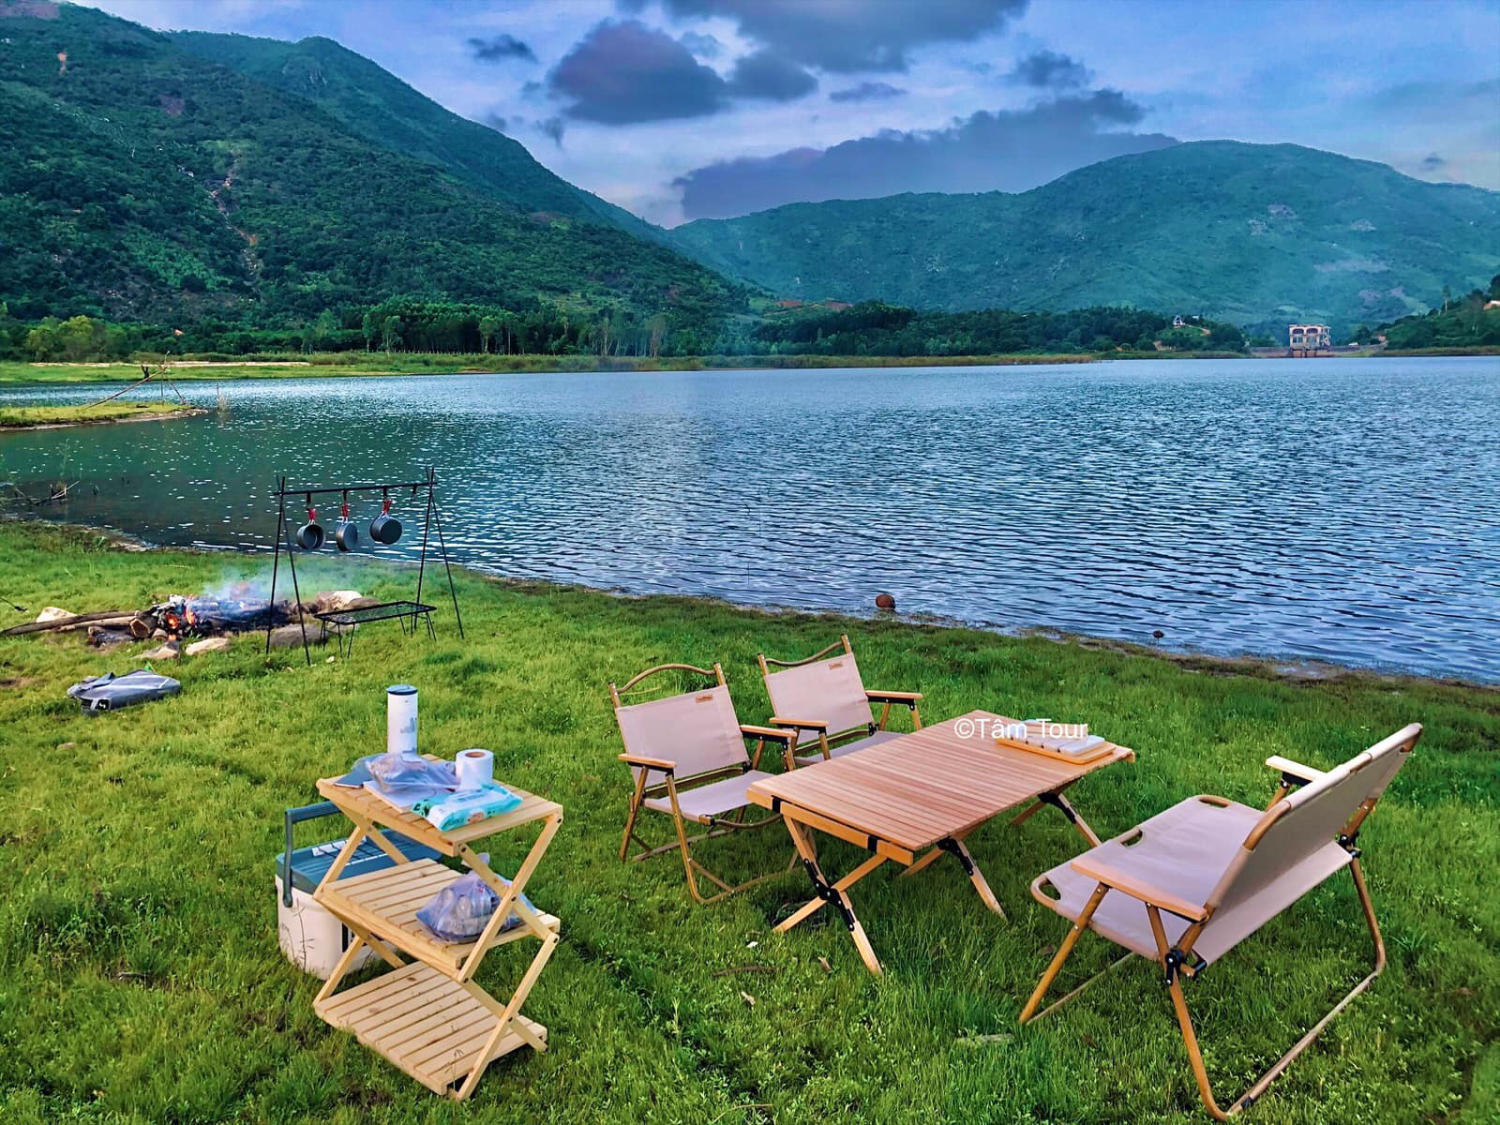 Buổi chiều ngồi chill - Cùng Tâm Tour cắm trại giữa núi rừng Nha Trang đẹp tựa tranh vẽ 2